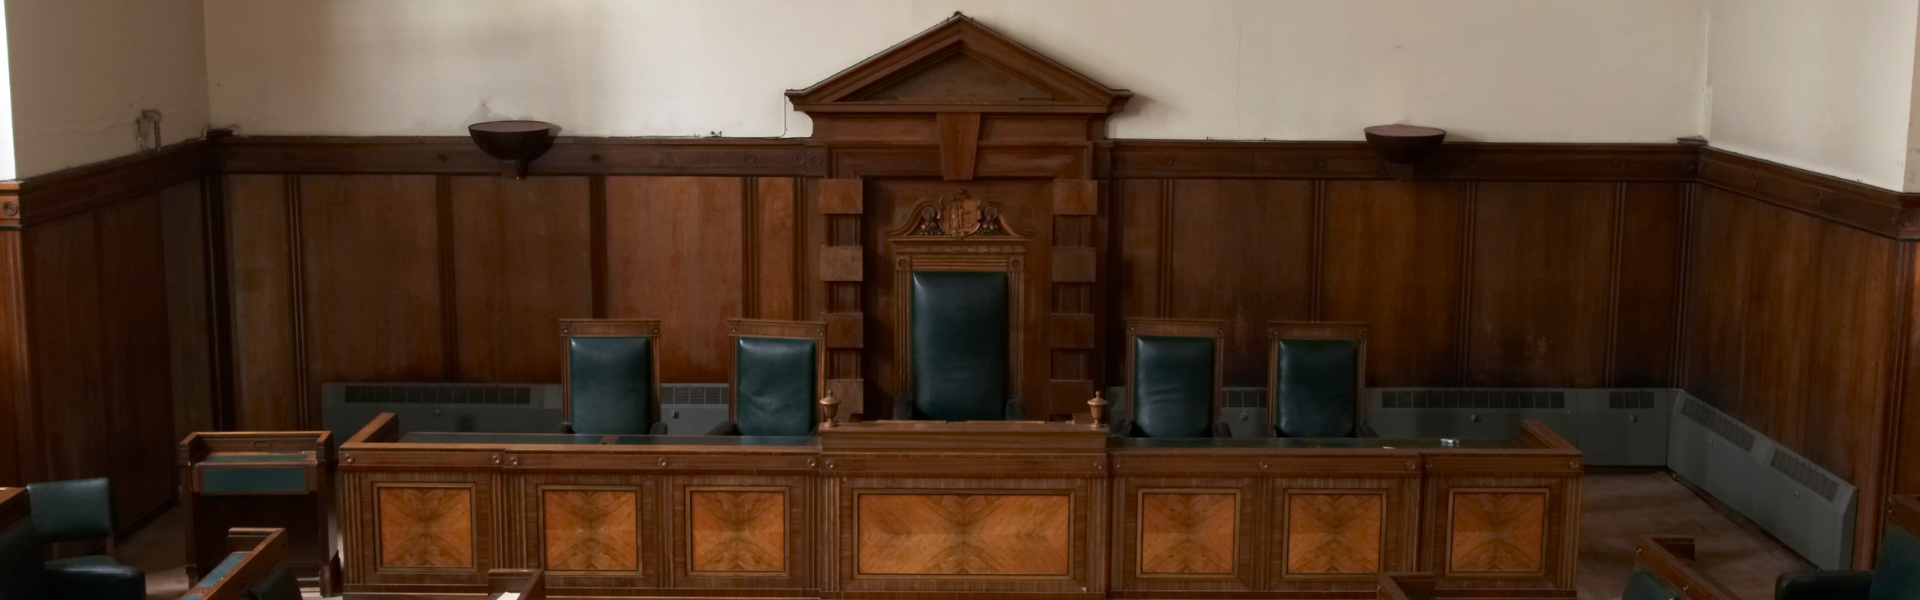 UK Courtroom